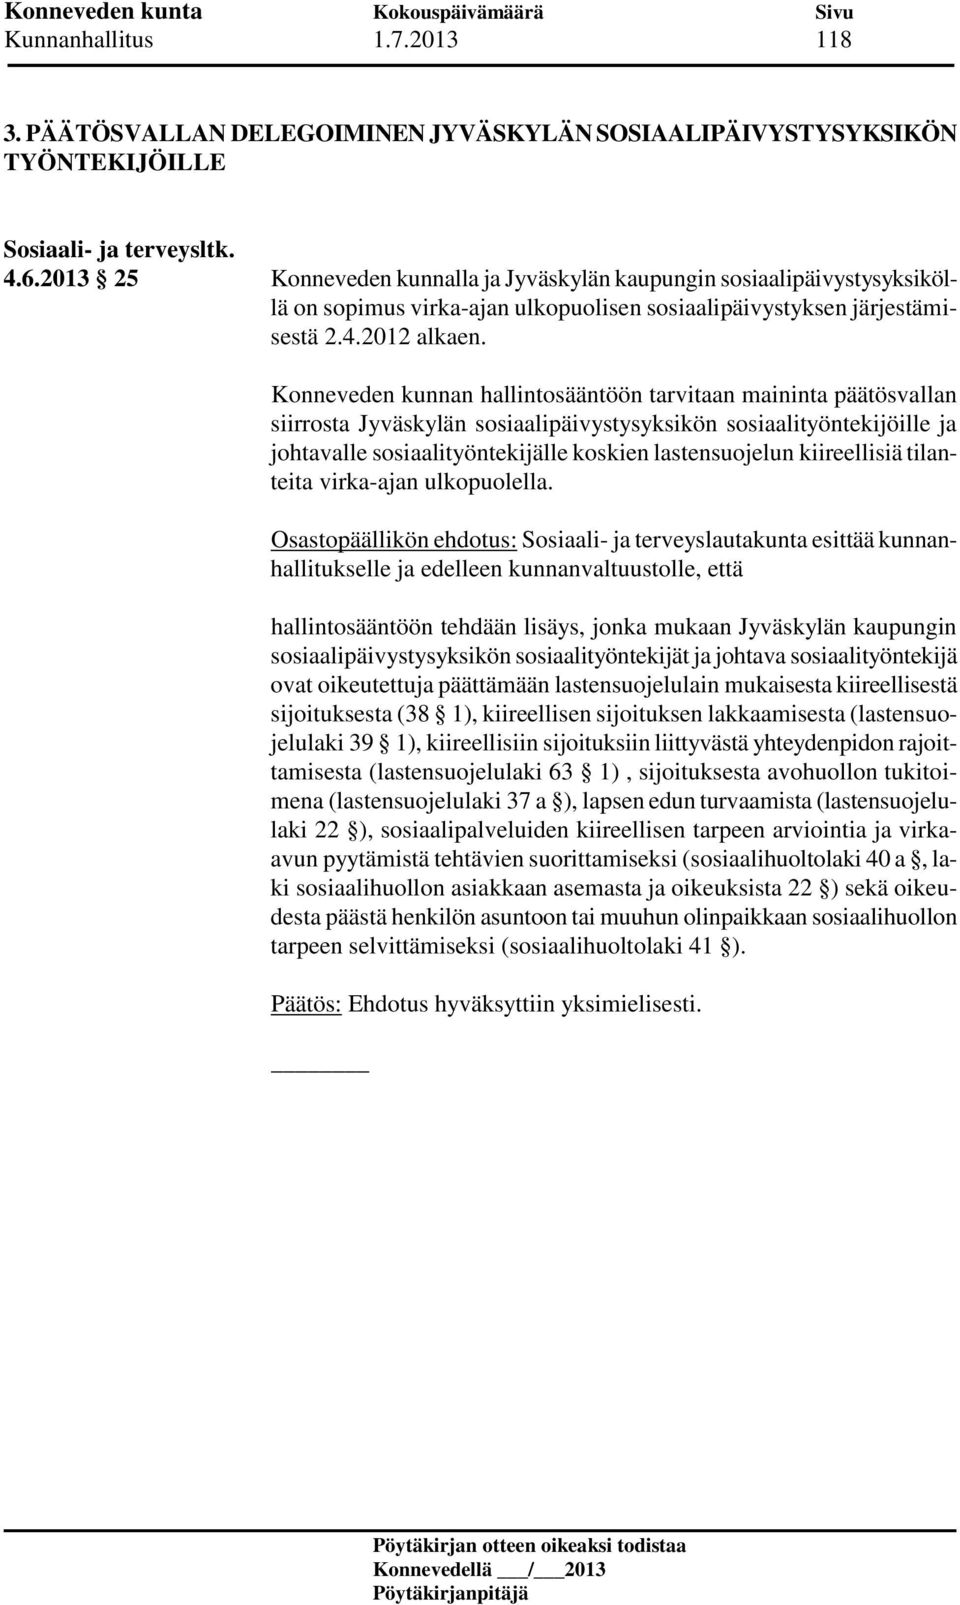 Konneveden kunnan hallintosääntöön tarvitaan maininta päätösvallan siirrosta Jyväskylän sosiaalipäivystysyksikön sosiaalityöntekijöille ja johtavalle sosiaalityöntekijälle koskien lastensuojelun